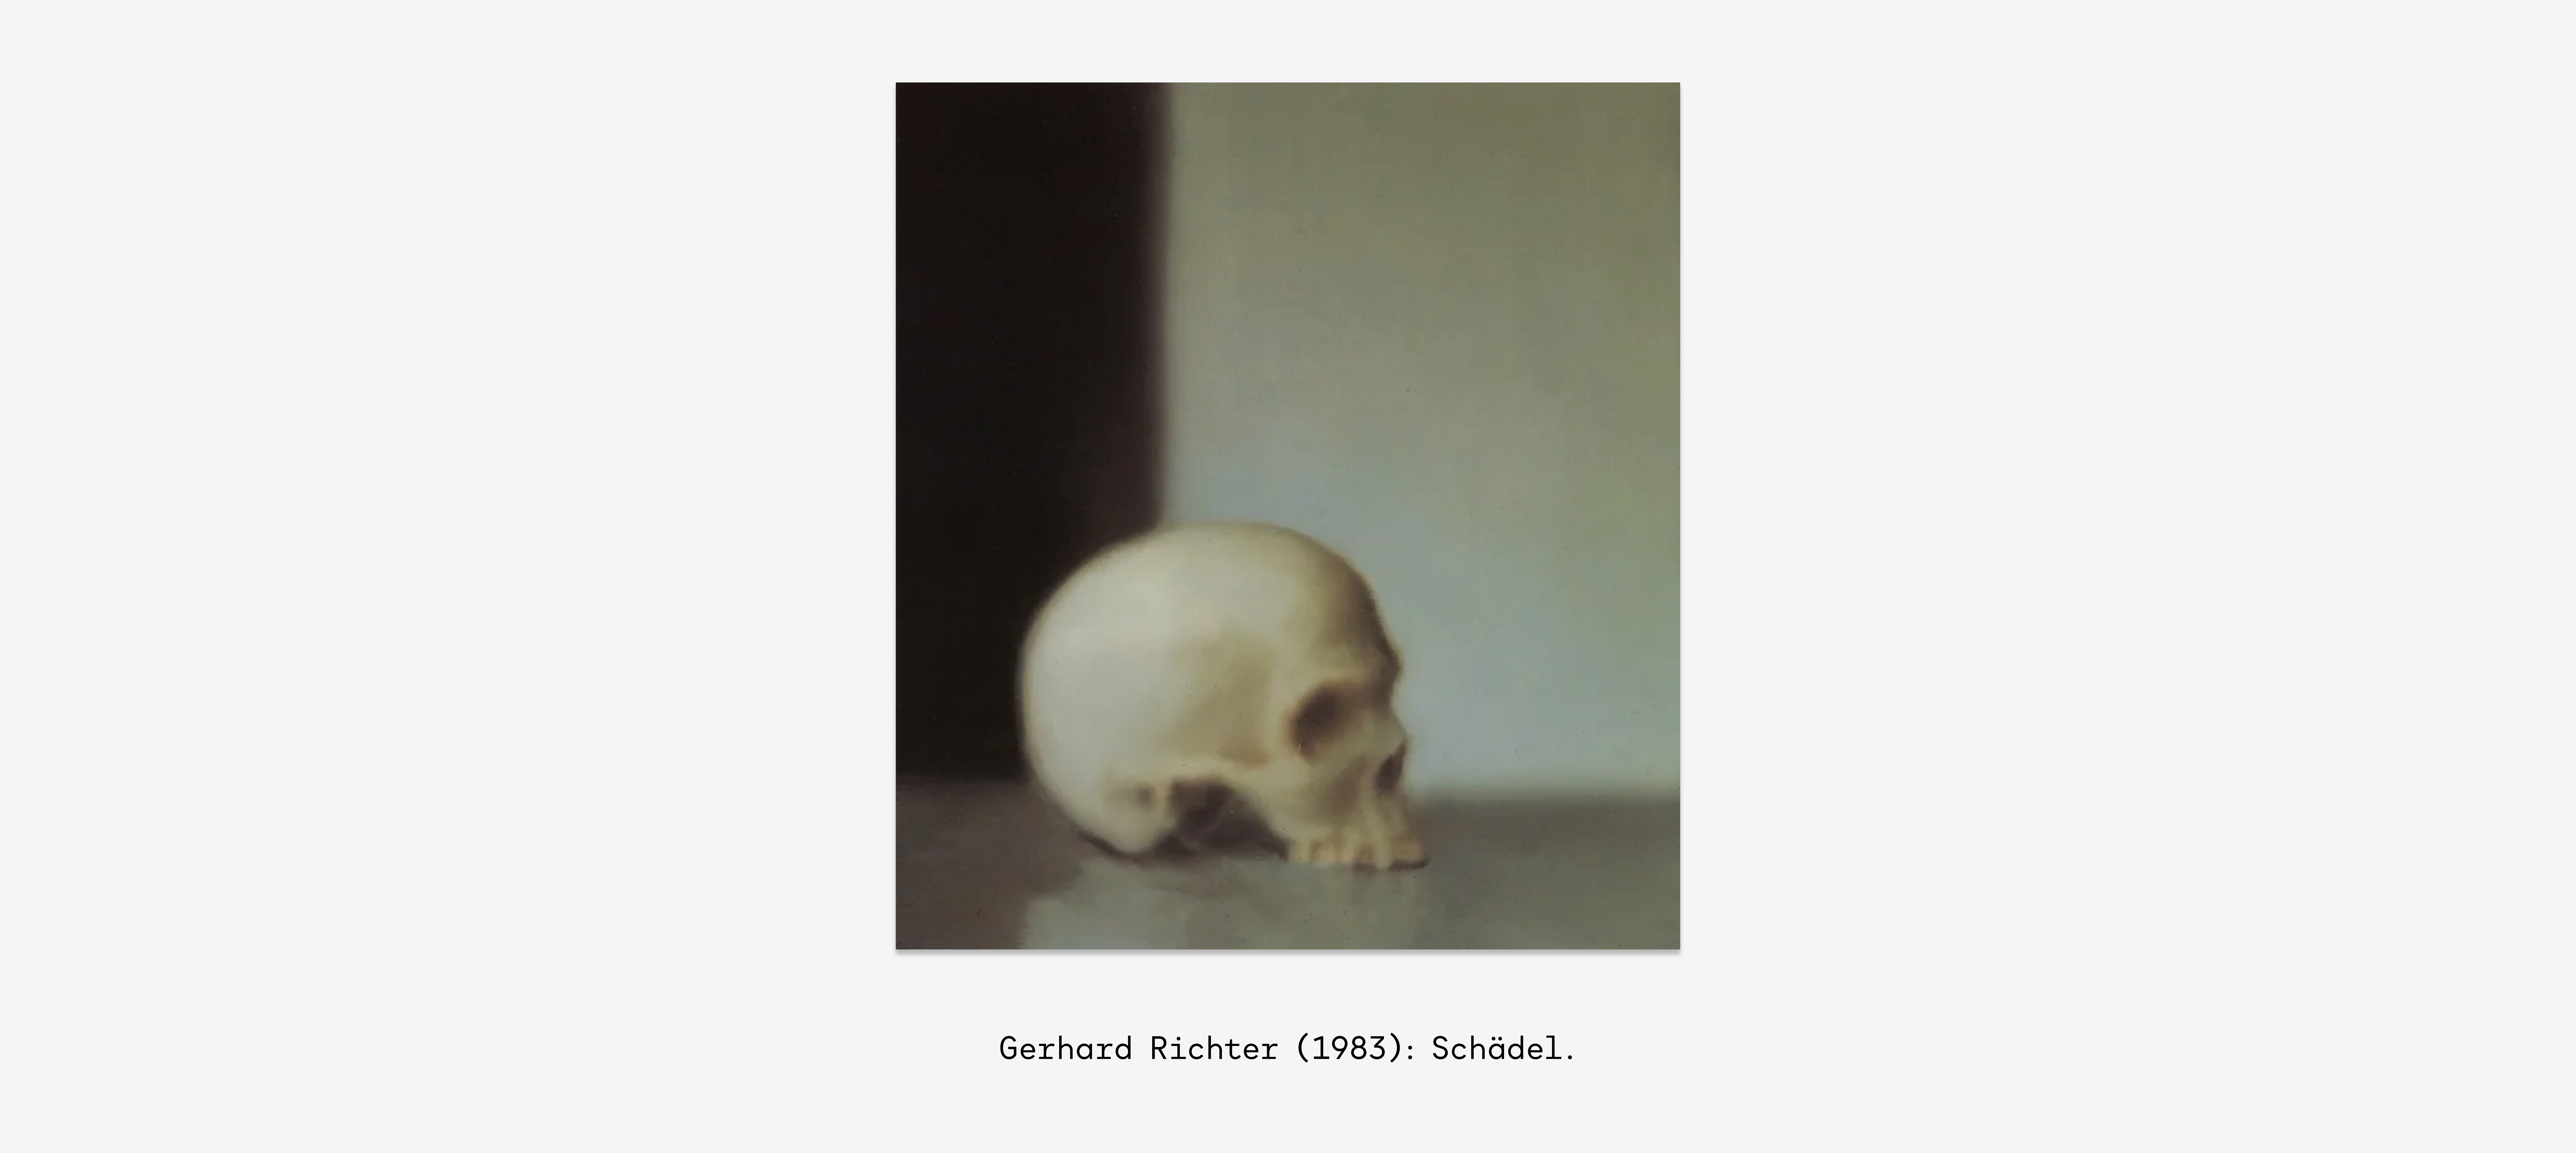 Gerhard Richter, Schädel (1983).jpg